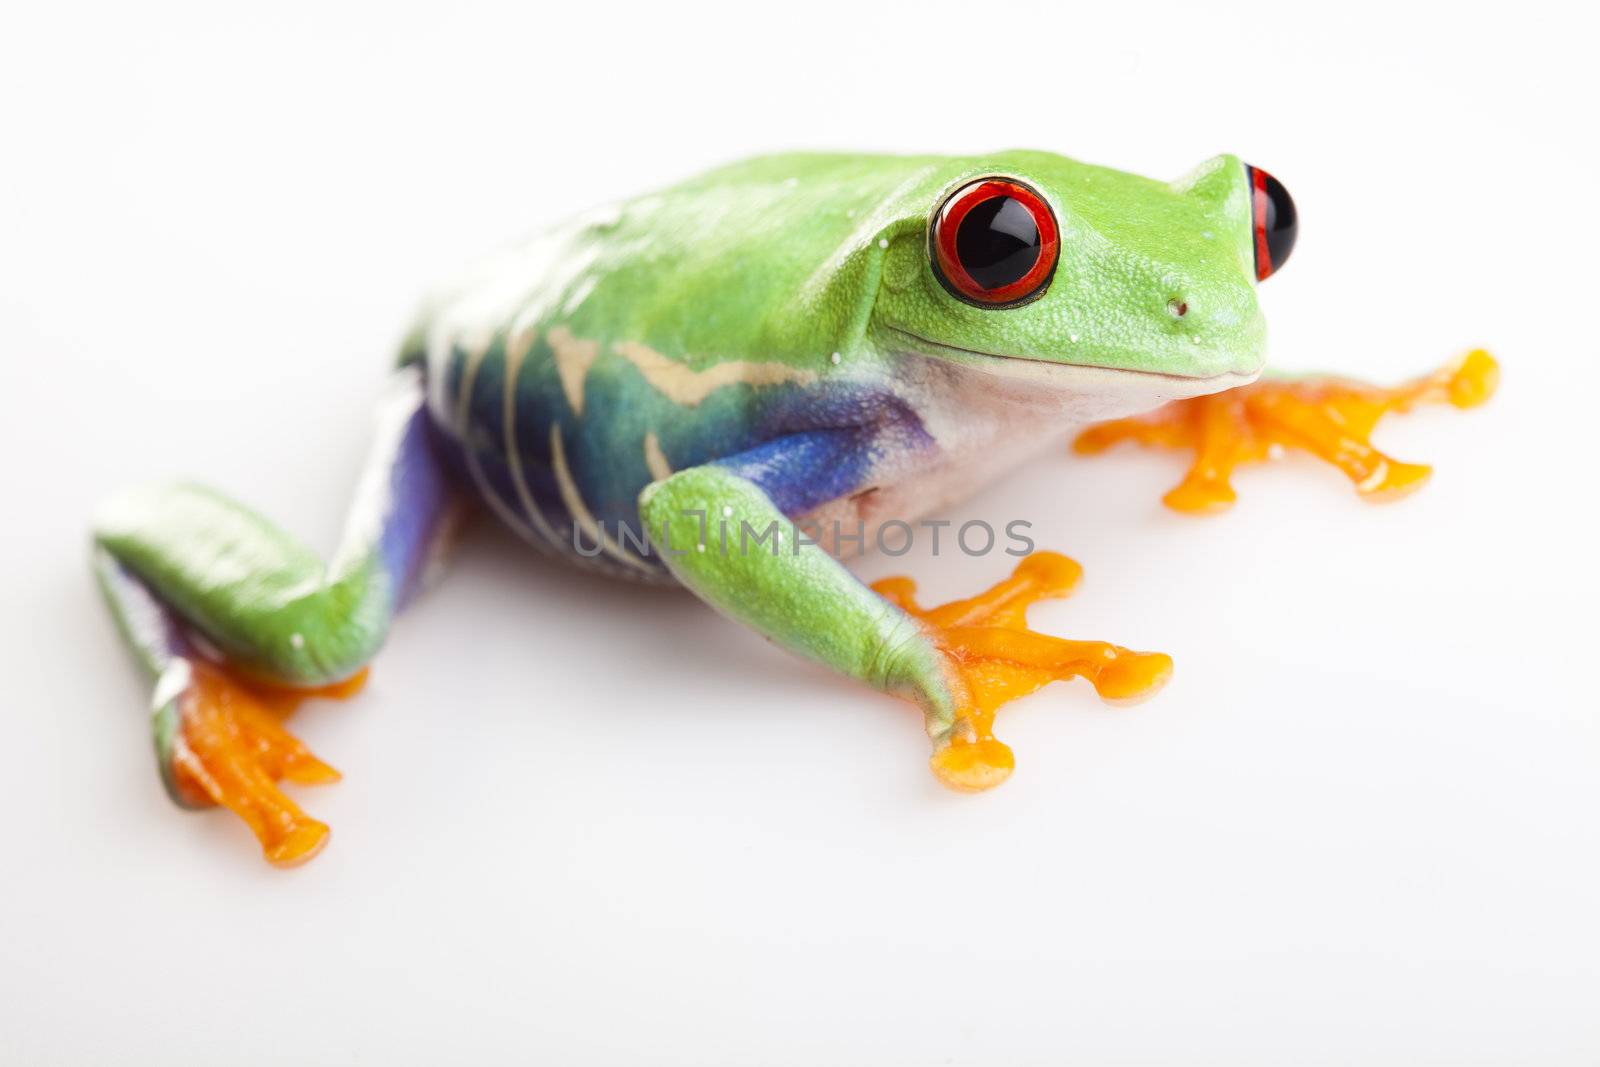 Crazy frog by JanPietruszka